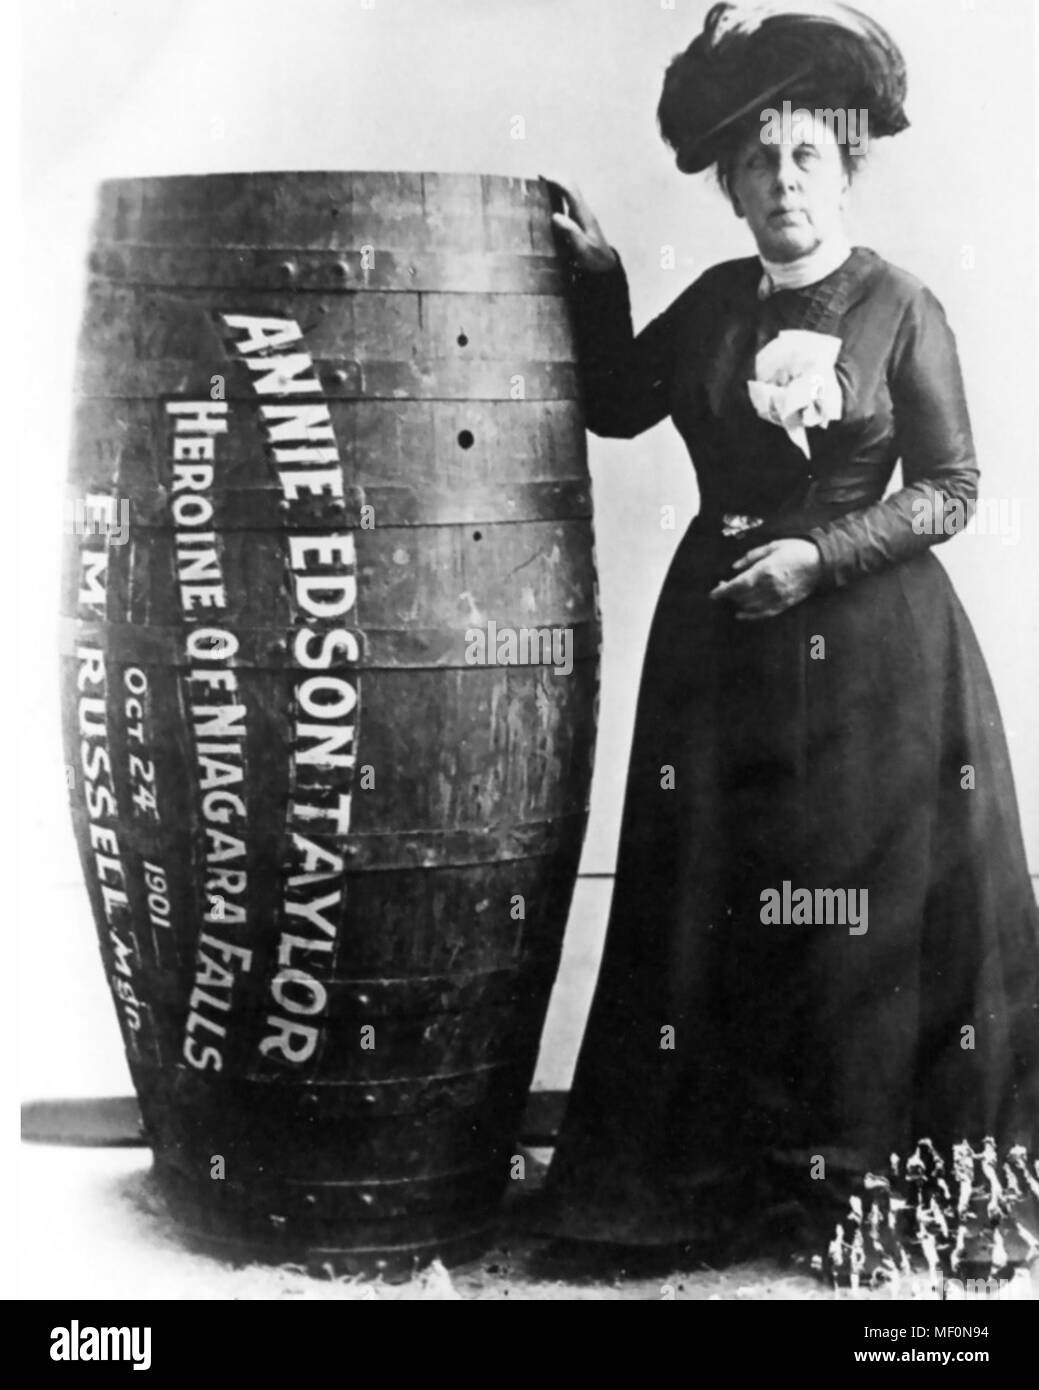 ANNIE EDSON TAYLOR (1838-1921) instituteur américain qui est devenu la première personne à survivre aller au-dessus des Chutes du Niagara dans un tonneau., un exploit qu'elle fait pour son anniversaire le 24 octobre 1901. Banque D'Images